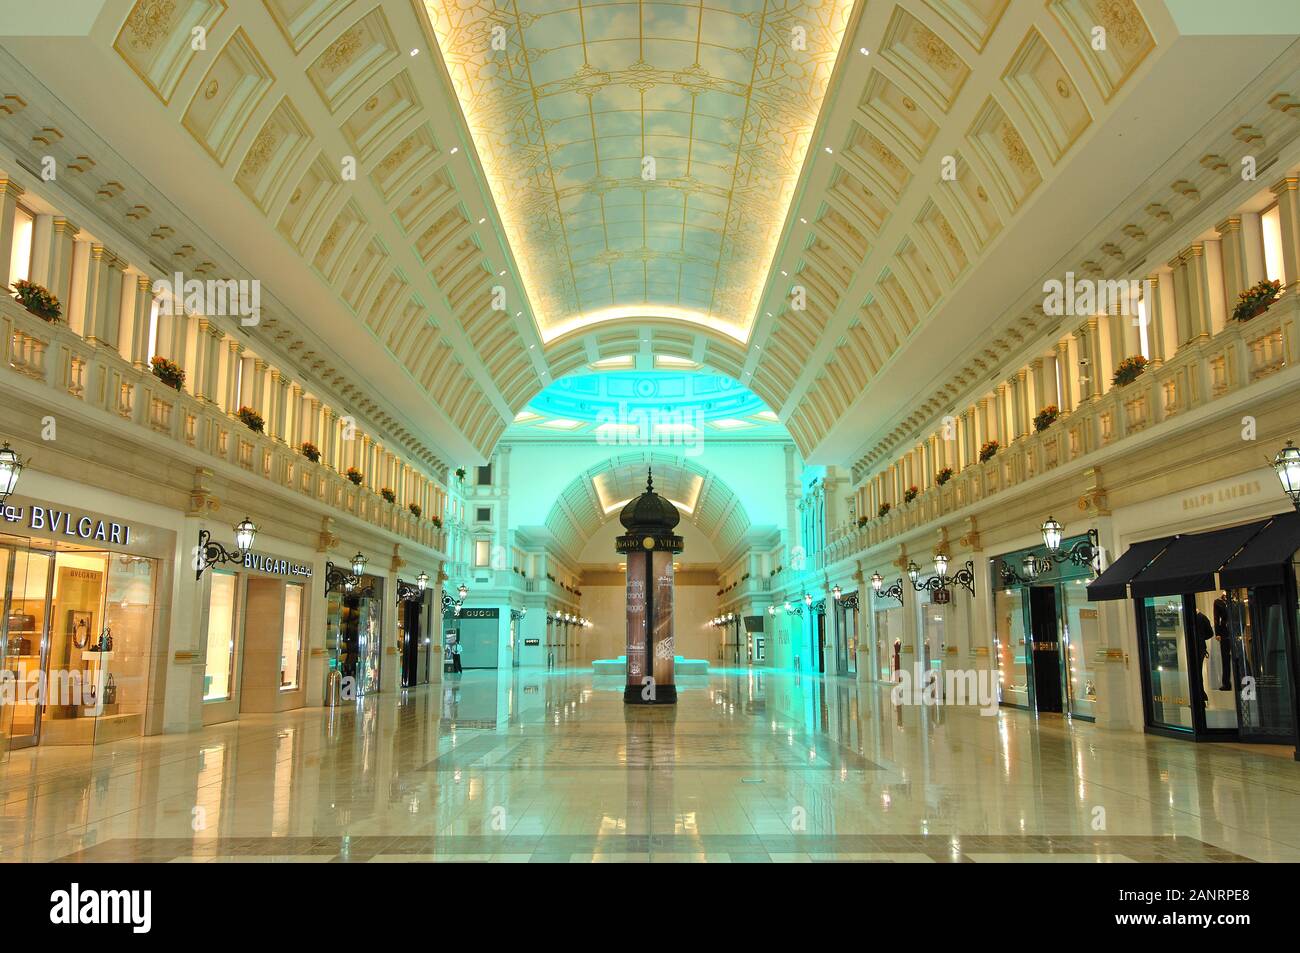 Villaggio Mall sección VIP de Doha, Qatar Fotografía de stock - Alamy